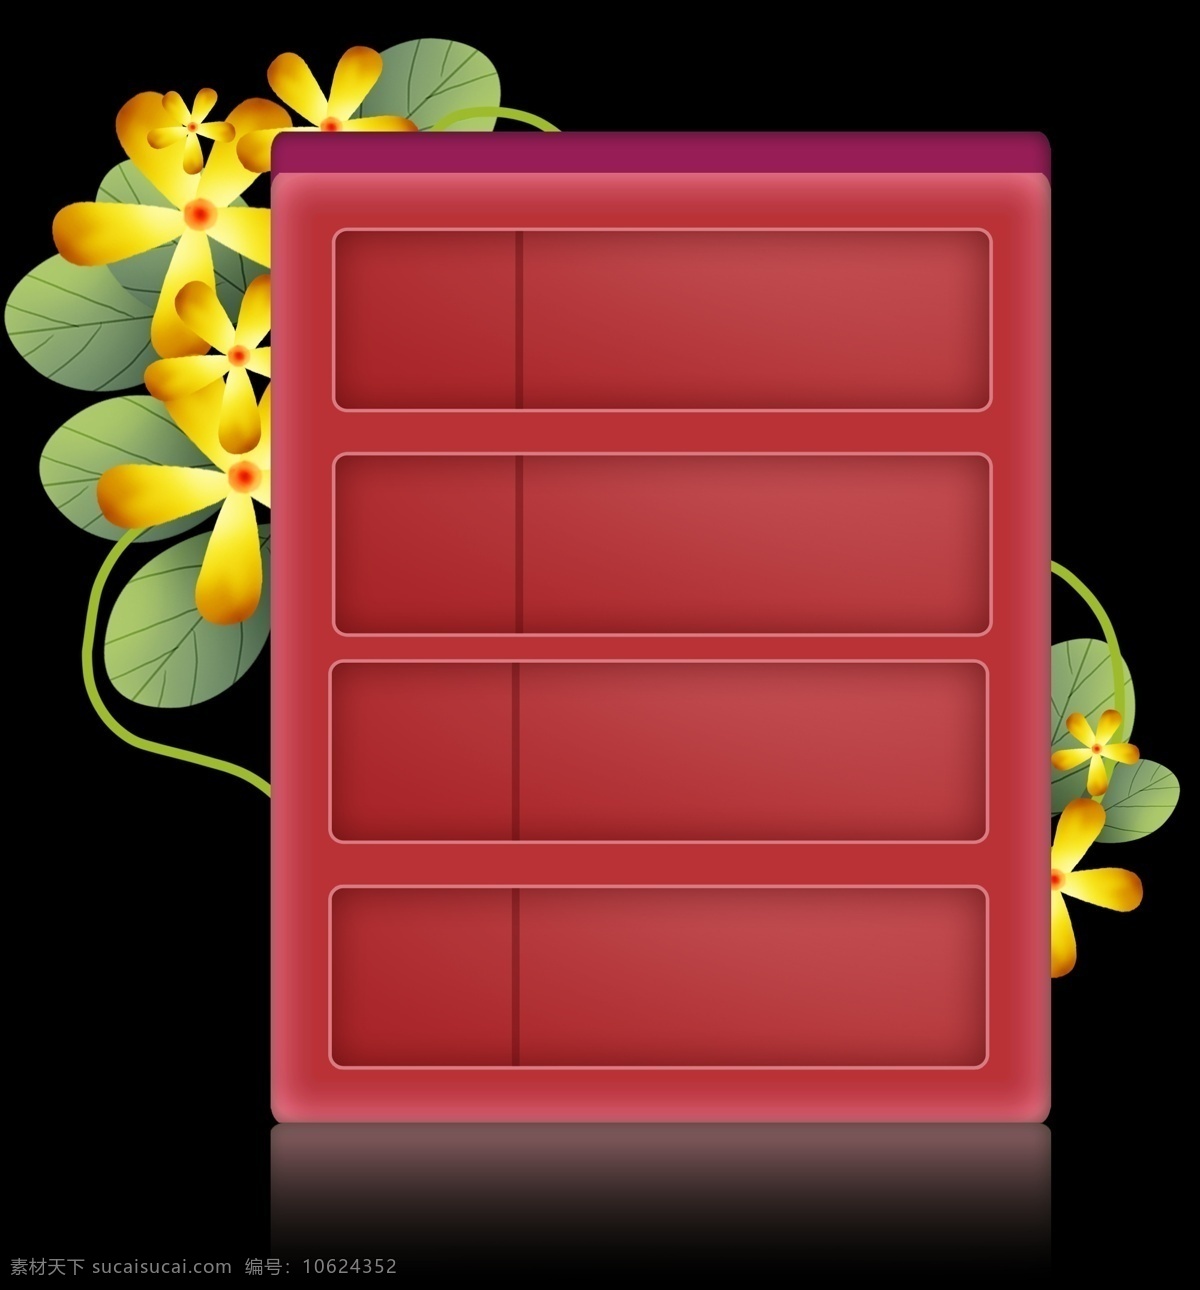 春天 红色 立体 文字 框 花卉文本框 标题 野花 黄色花朵 花朵提示框